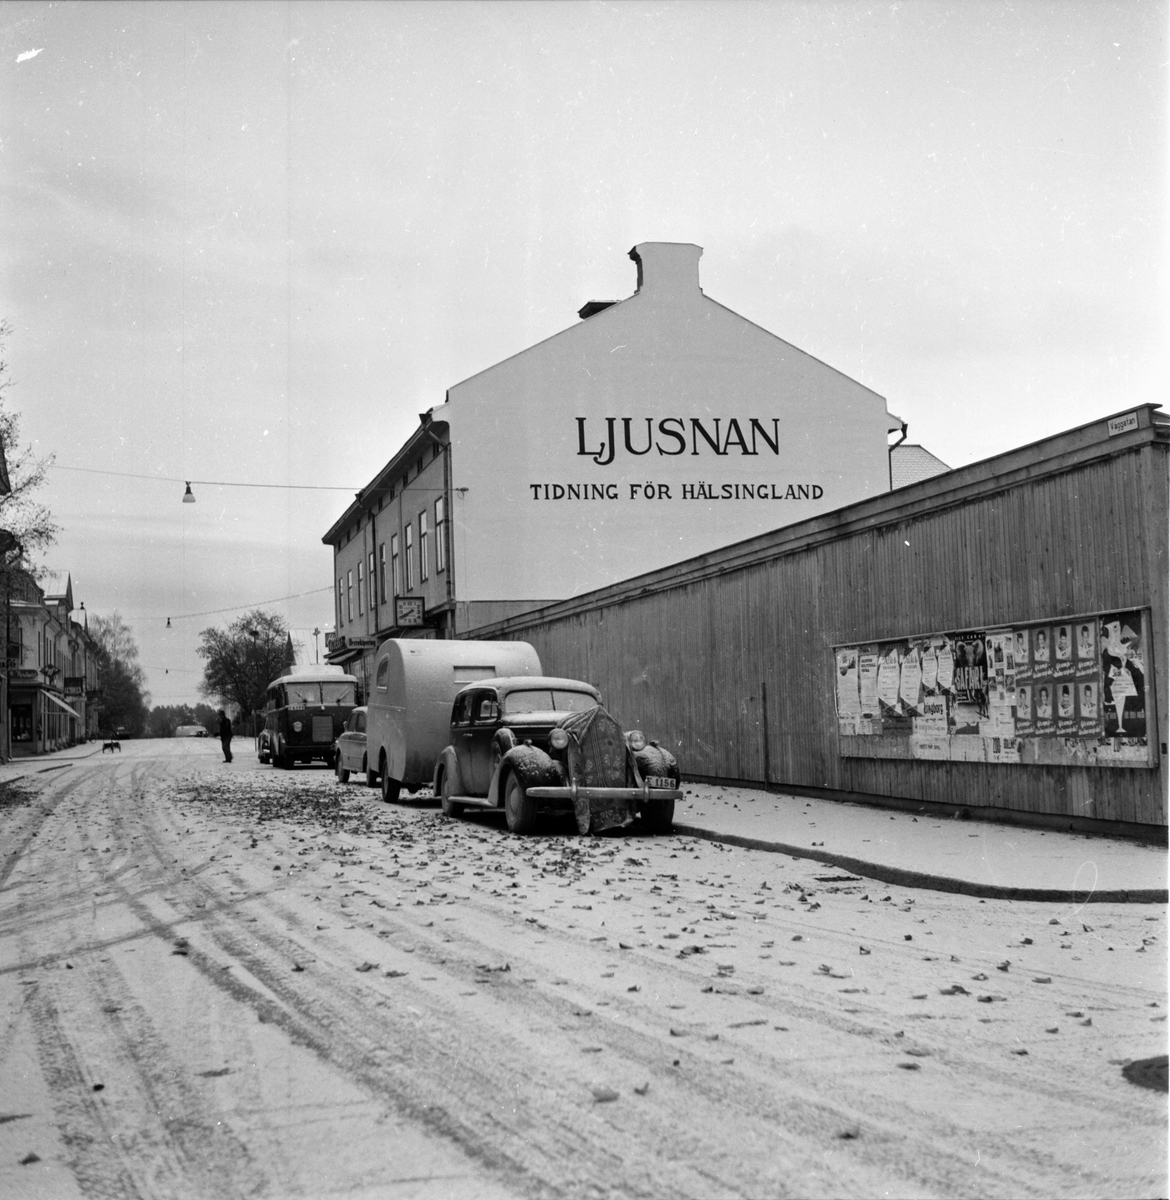 Höstbild från Bollnäs odengatan med
gaveltext Ljusnan mot torget våggatan.
Oktober 1955.